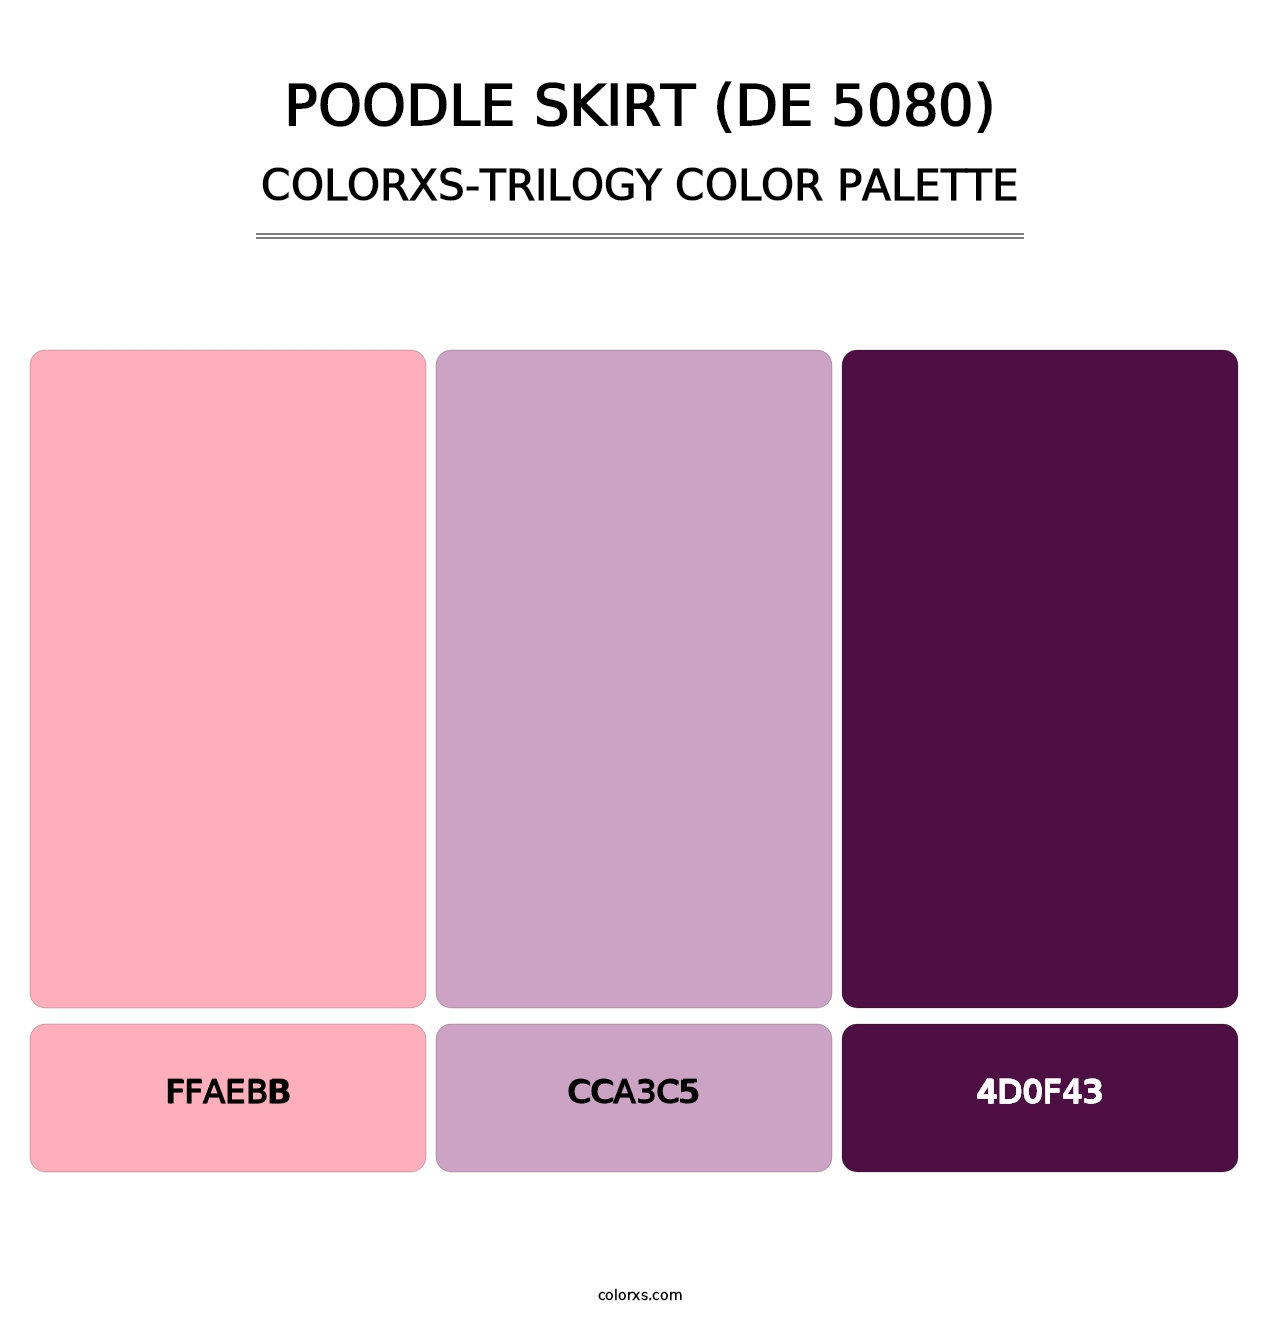 Poodle Skirt (DE 5080) - Colorxs Trilogy Palette